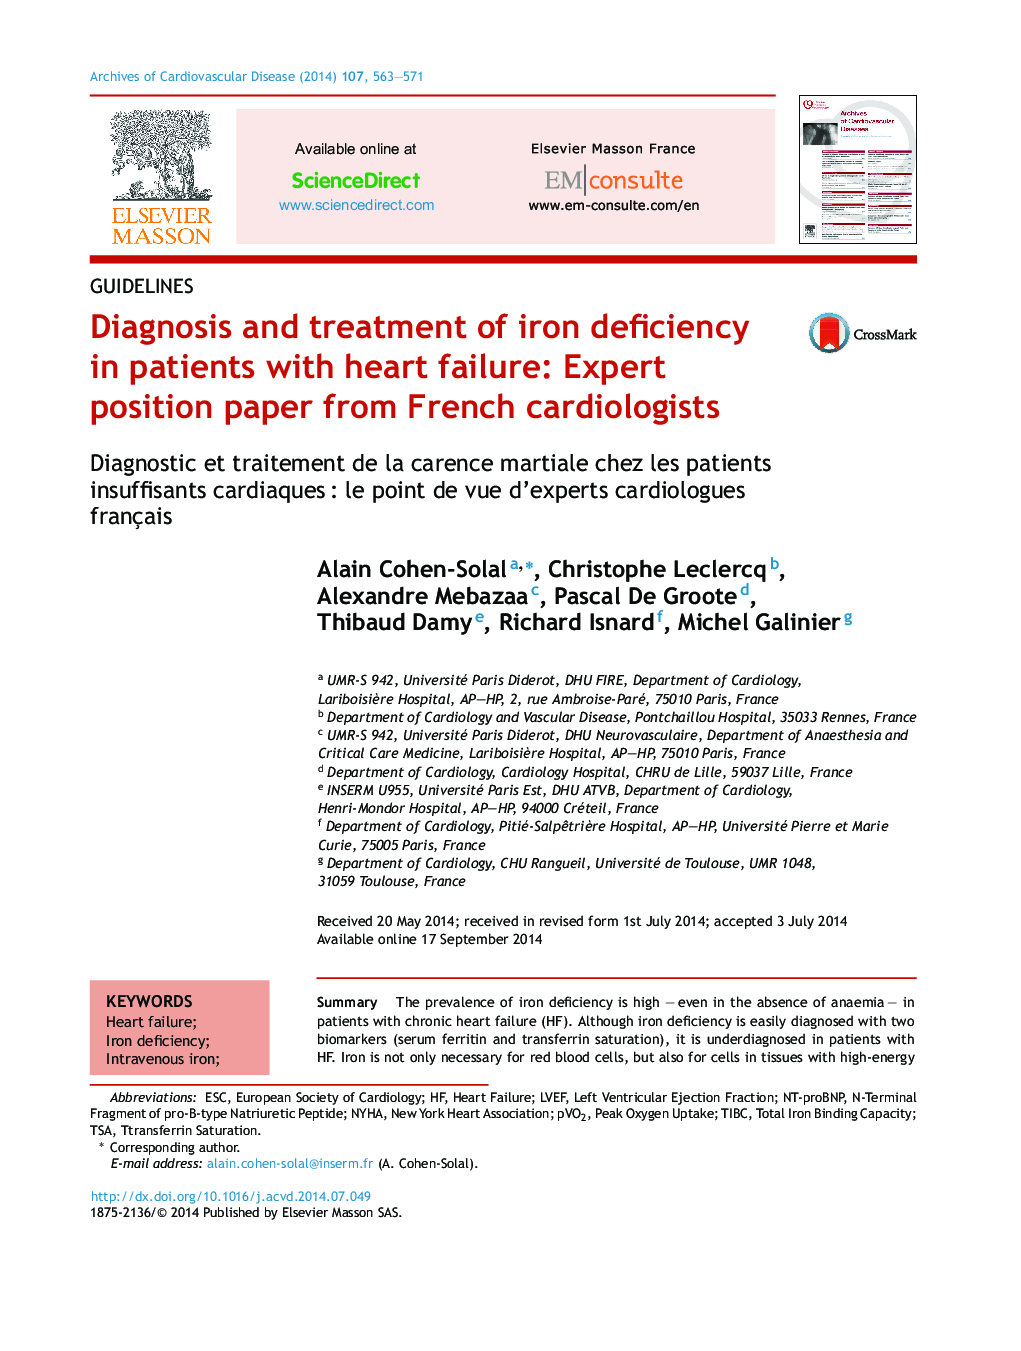 تشخیص و درمان کمبود آهن در بیماران مبتلا به نارسایی قلبی: مقاله کارشناسان قلب فرانسه 